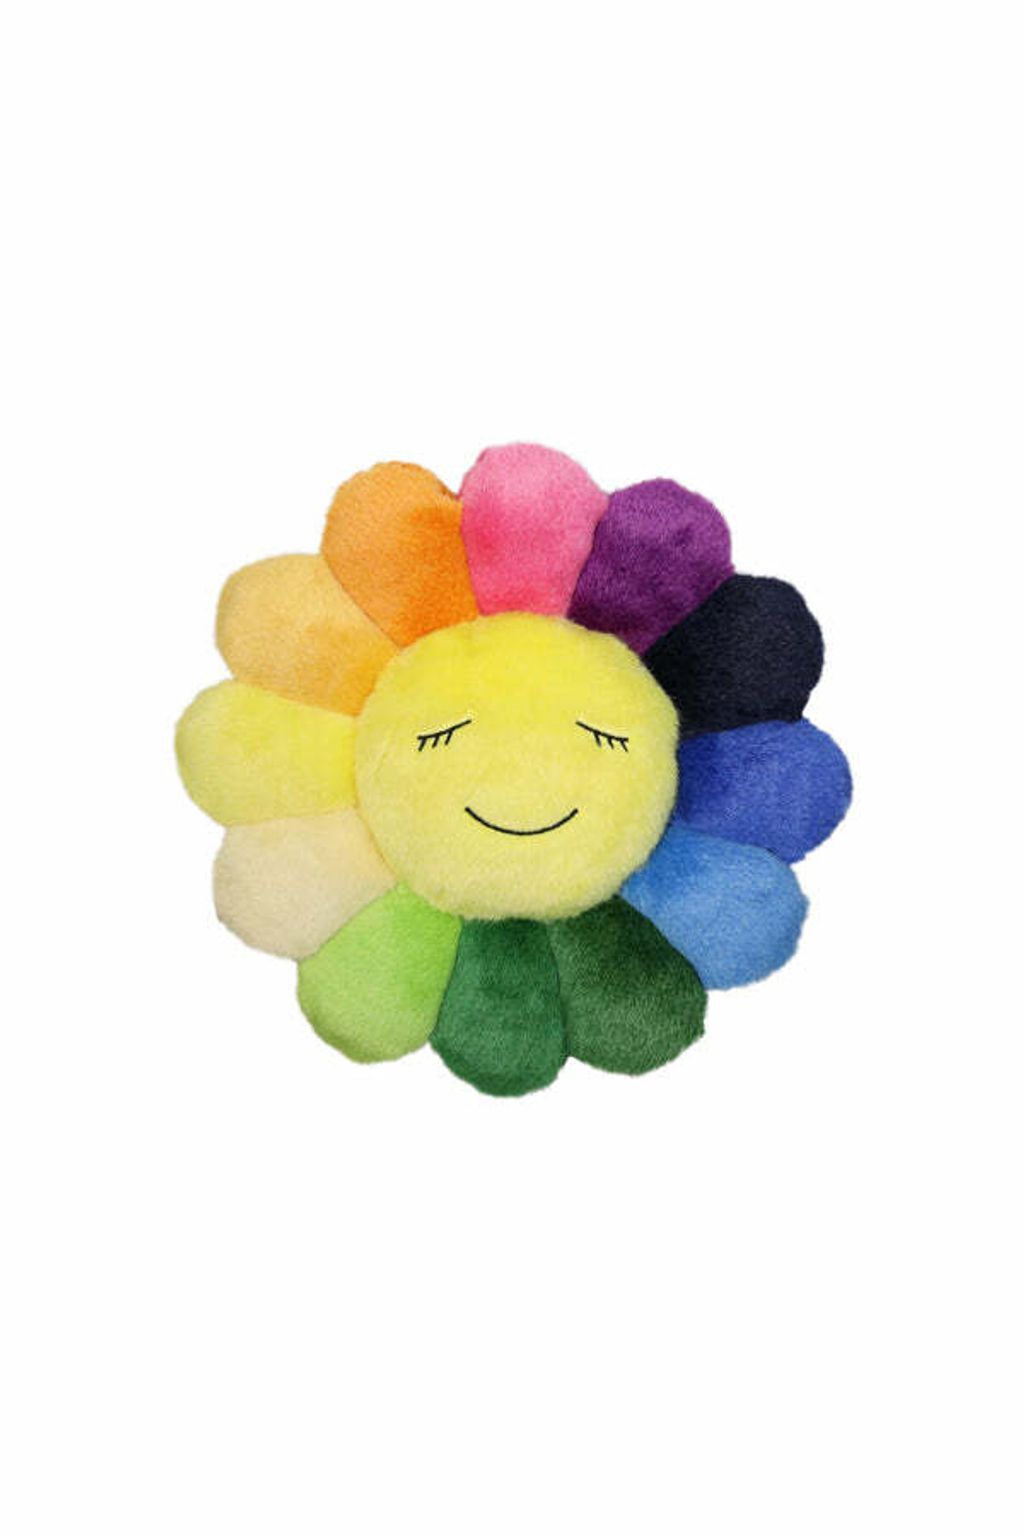 村上隆 Flower Cushion Rainbow 1m お花 レインボー - キャラクターグッズ